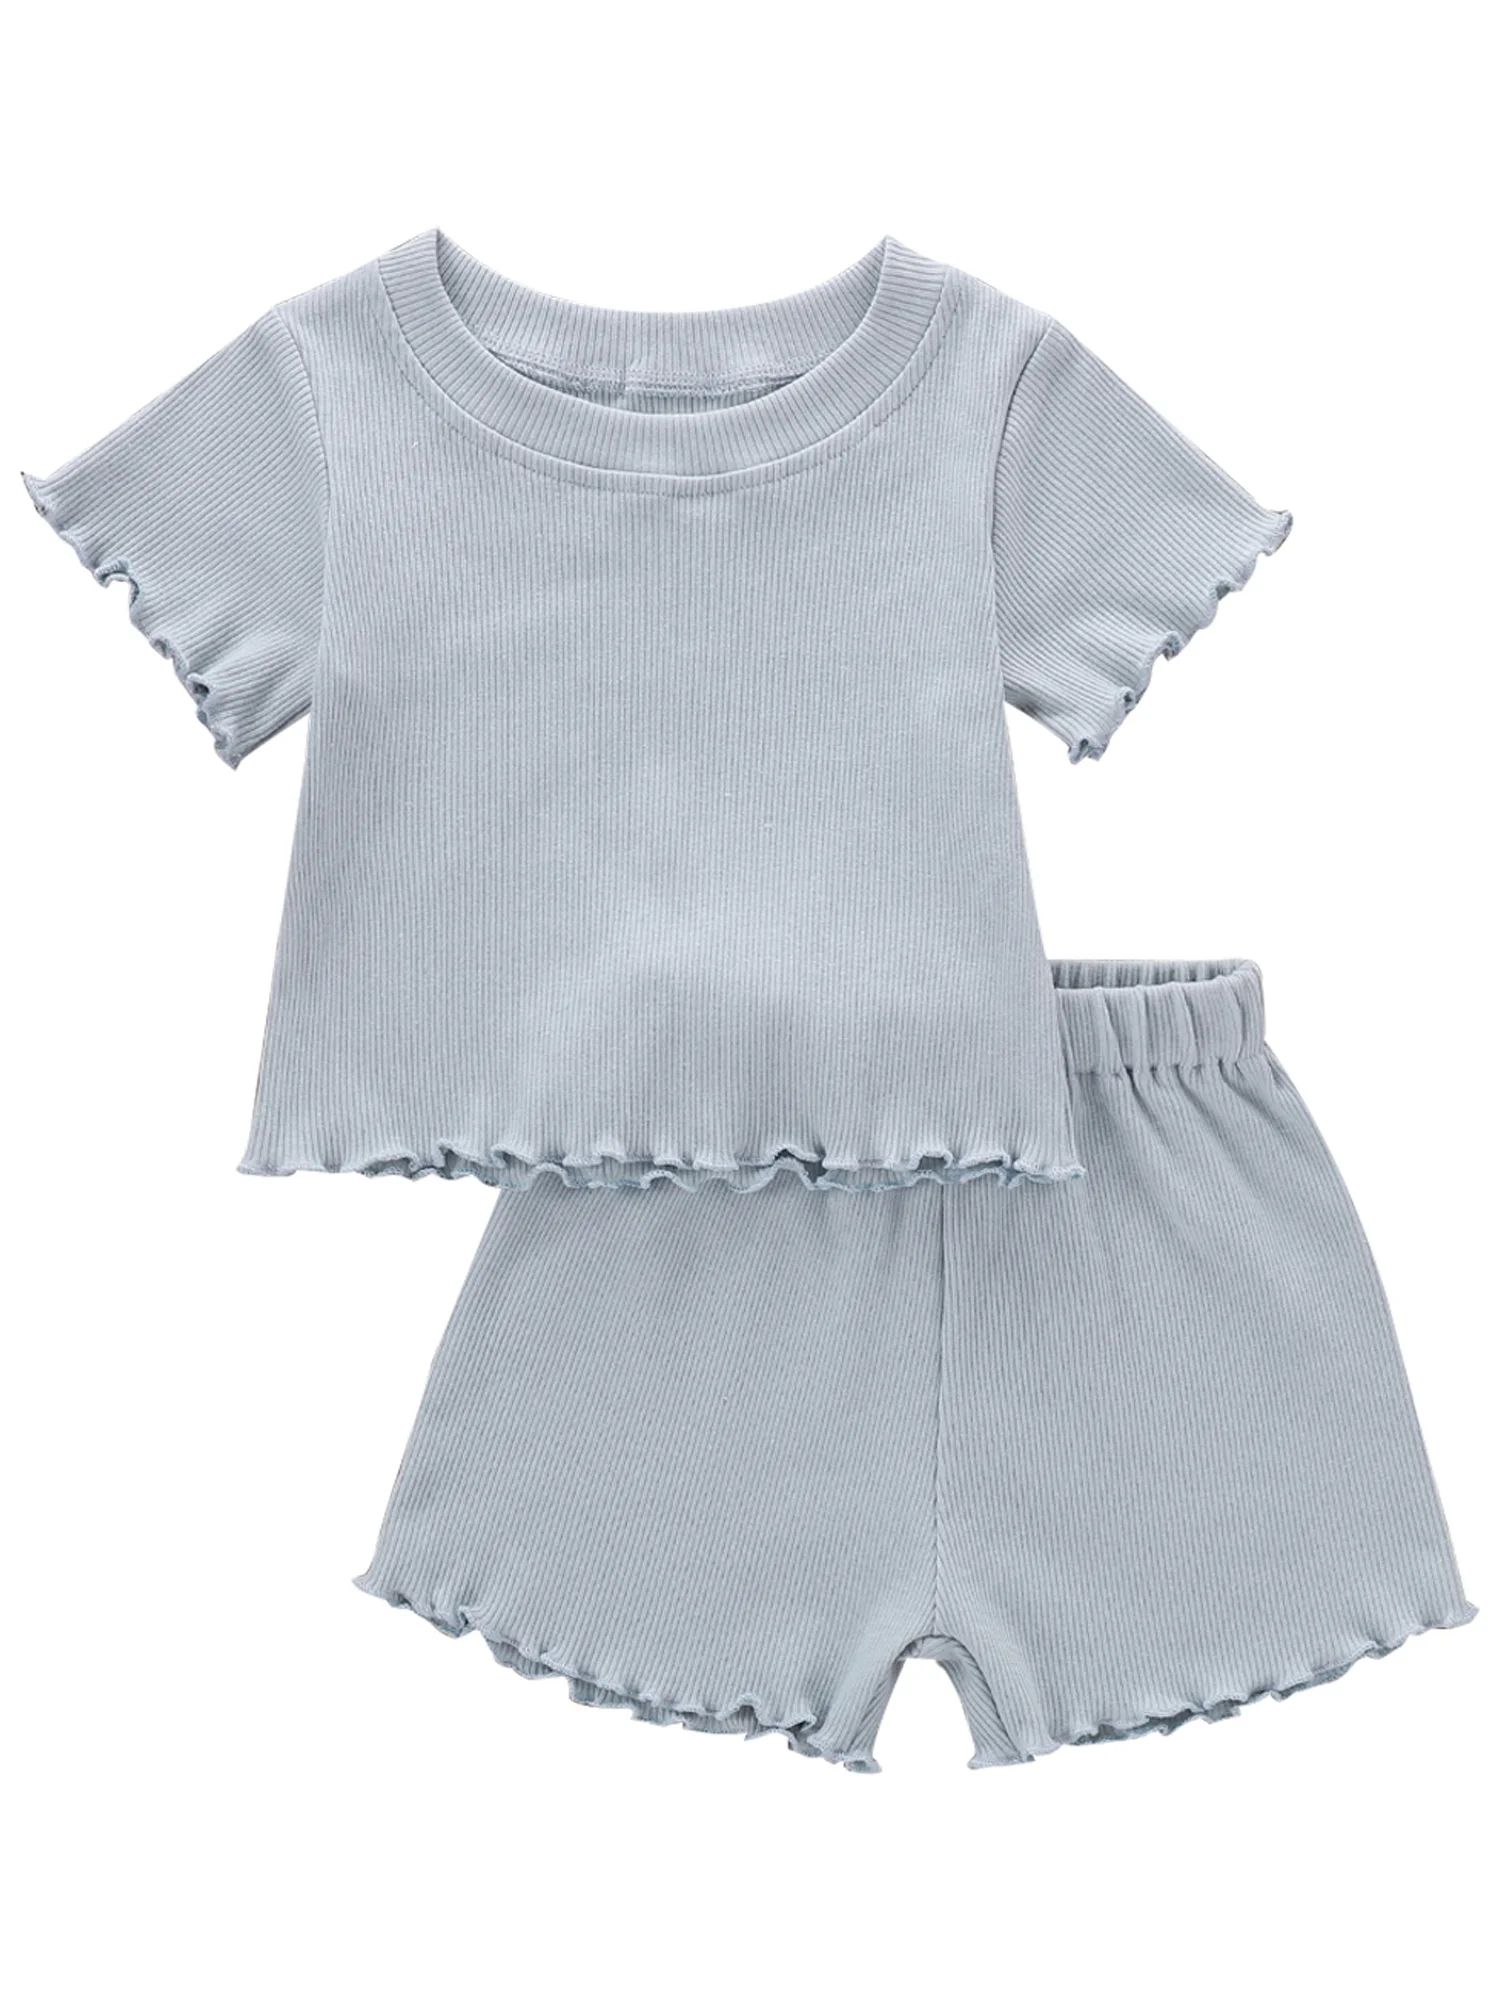 Musuos 2Pcs Baby Girls Ruffle Ribbed Knit Short Sleeves T-Shirt Tops Elastic Waist Shorts | Walmart (US)